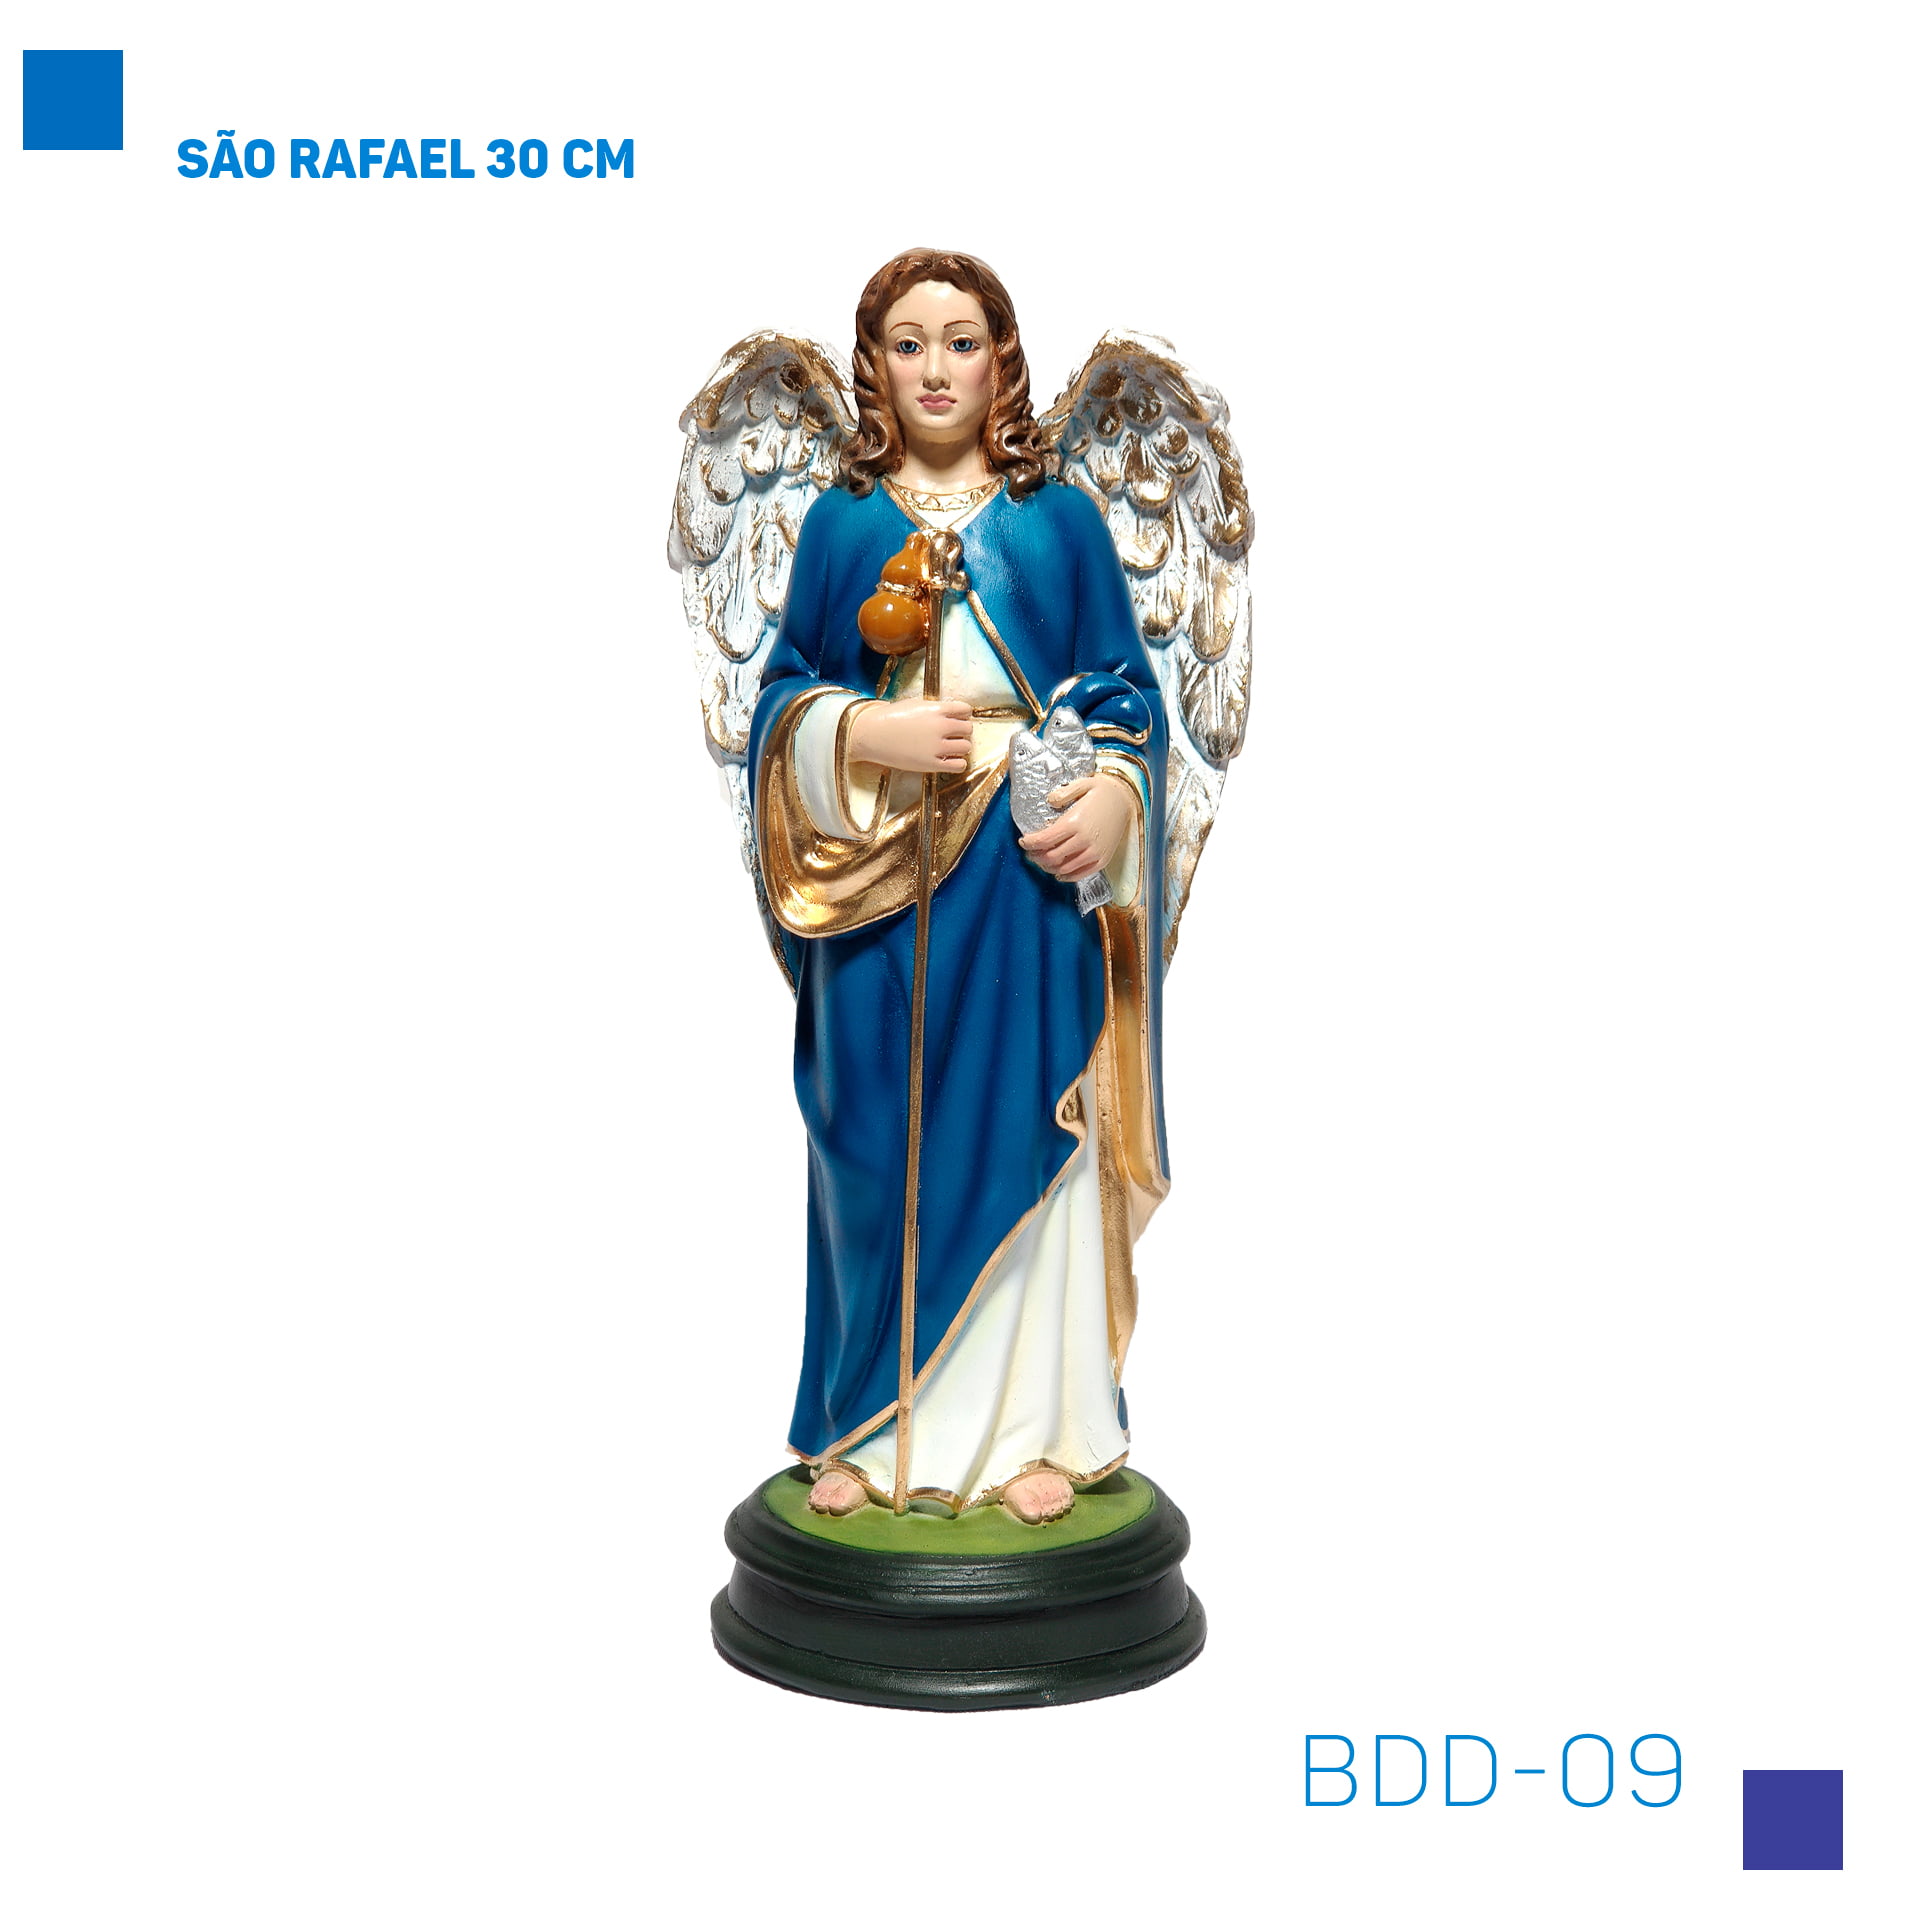 Bira Artigos Religiosos - São Rafael 30 CM - Cód. BDD-09